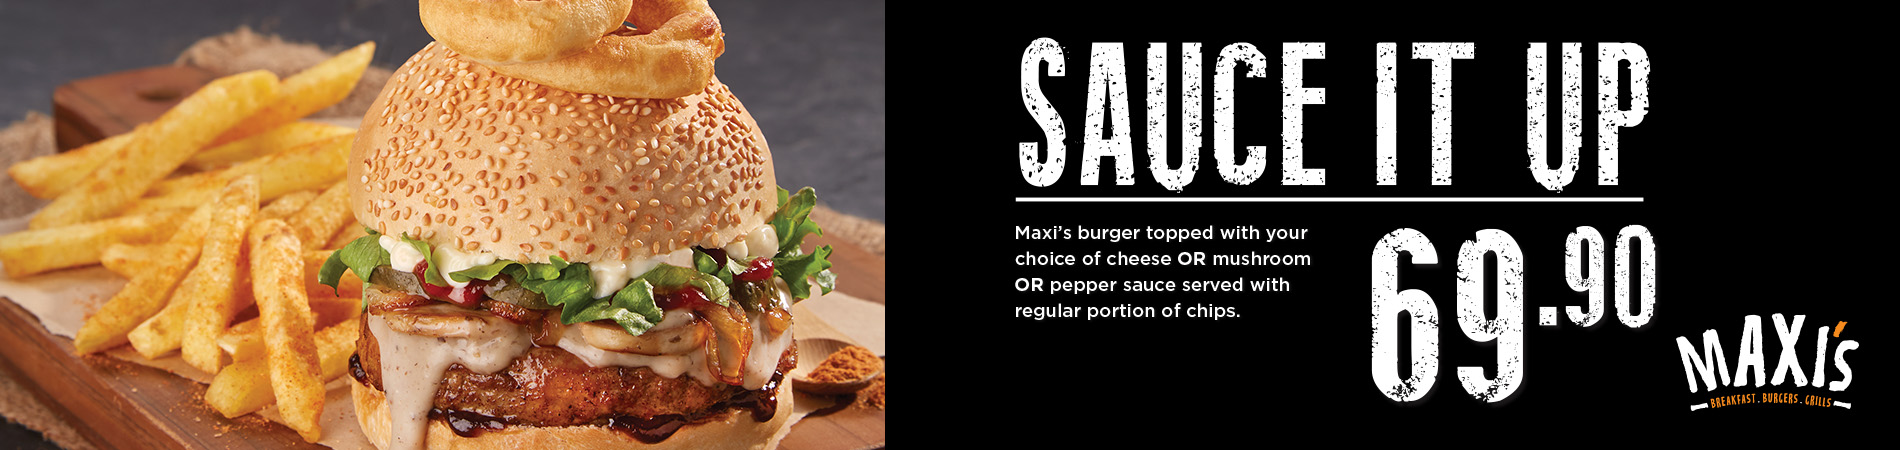 Maxi's Sauce It Up Burger